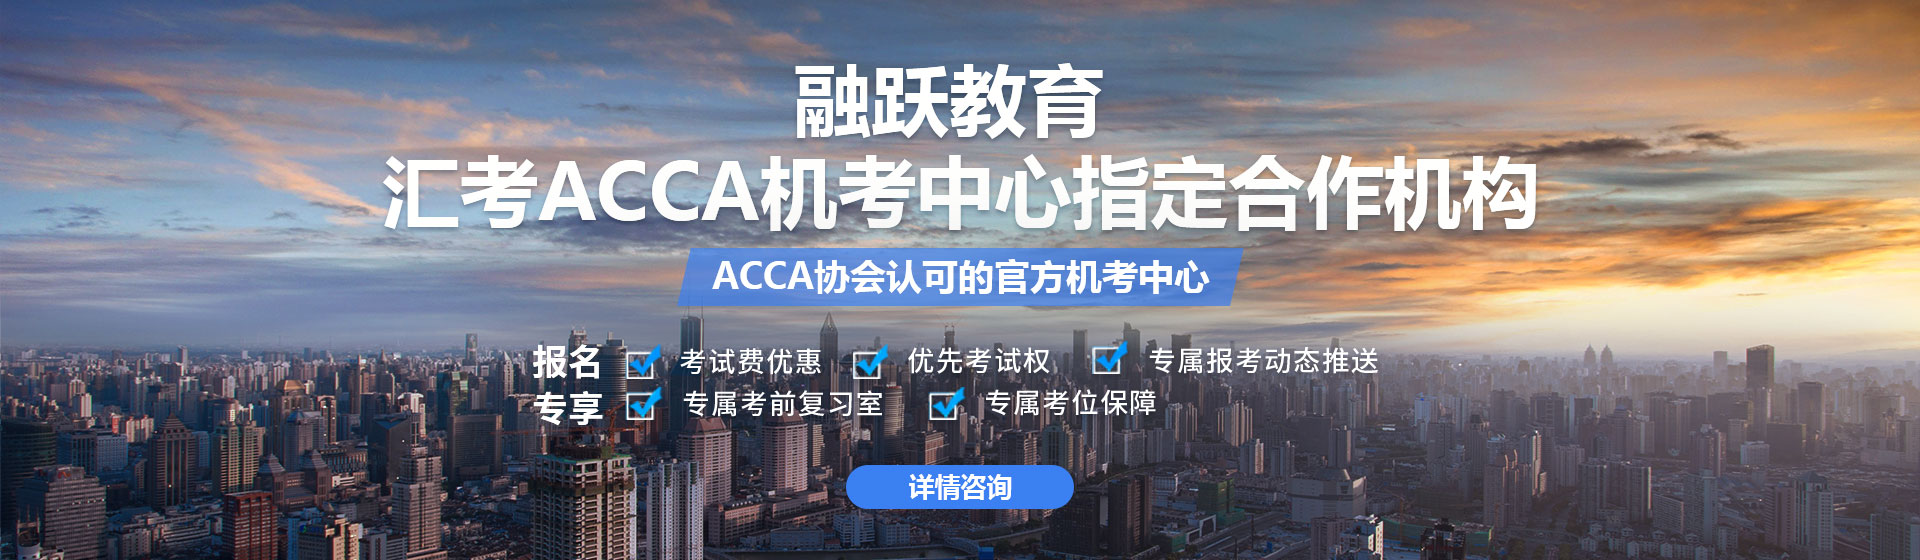 ACCA自学网-看ACCA网课、学ACCA教材、做ACCA历年考试真题、就来融跃教育ACCA自学网